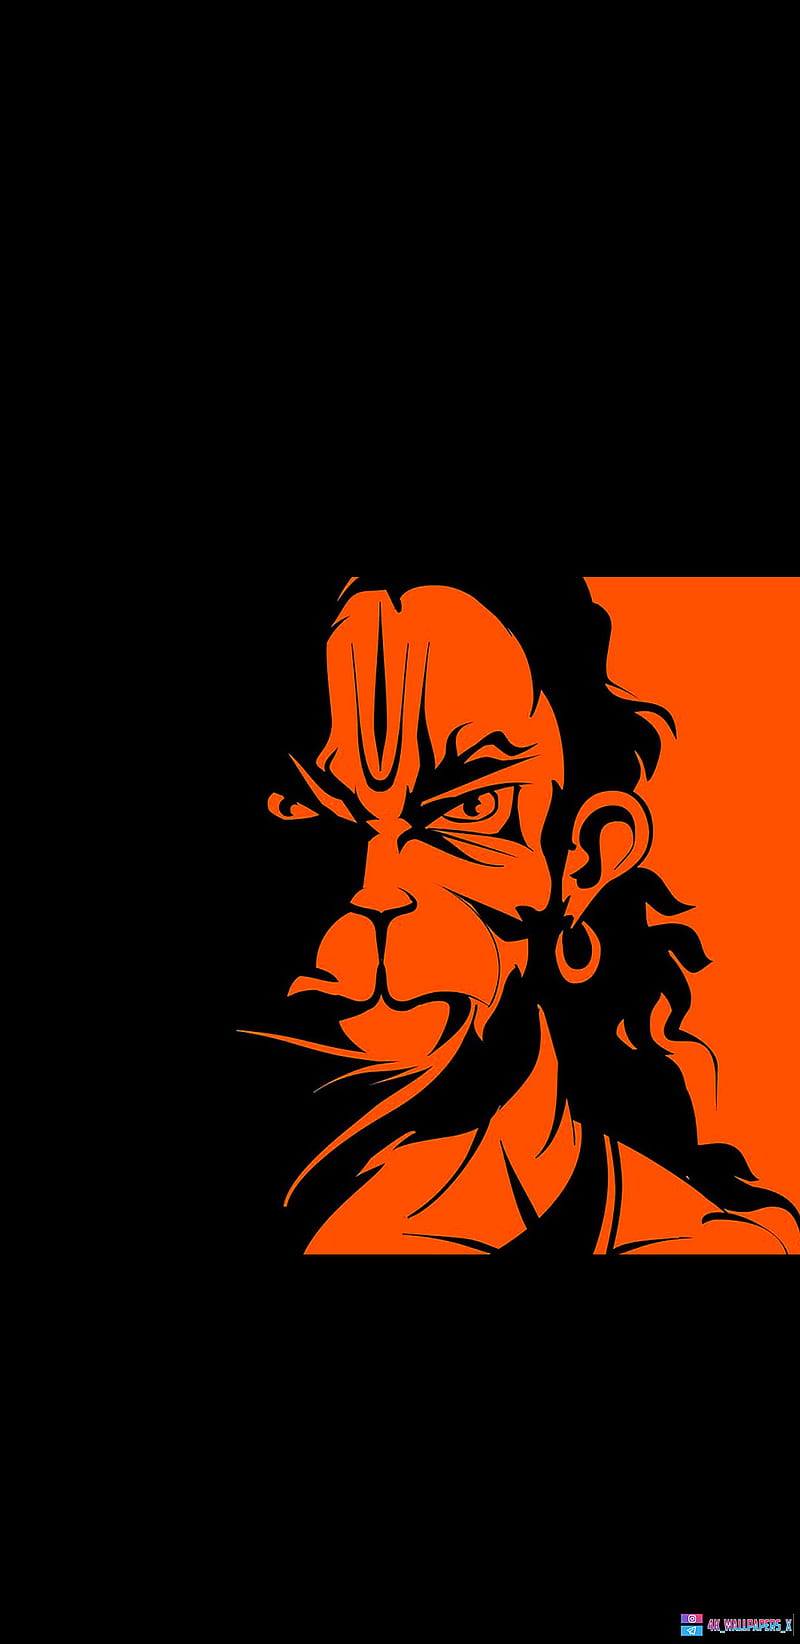 Hanuman ji Bhog: सभी कष्टों का होगा निवारण मंगलवार के दिन हनुमान जी को  लगाएं इन चीजों का भोग - hanuman ji bhog-mobile